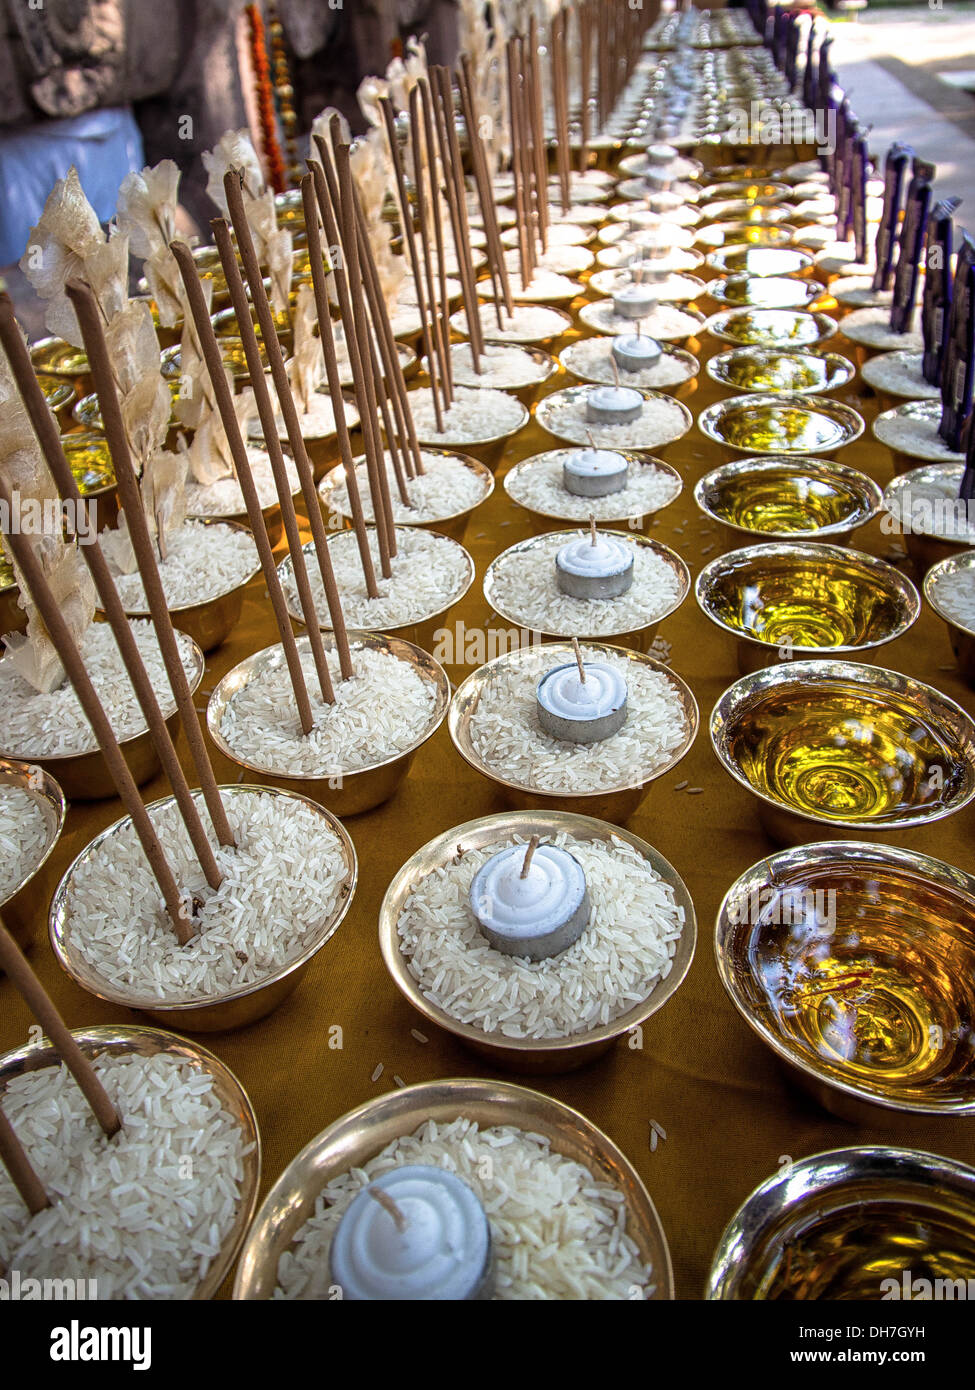 Kerzen, Weihrauch, Reis und Schokoriegel aufgereiht als zeremonielle Opfer bei der Mahabodhi-Tempel in Bodhgaya, Indien. Stockfoto